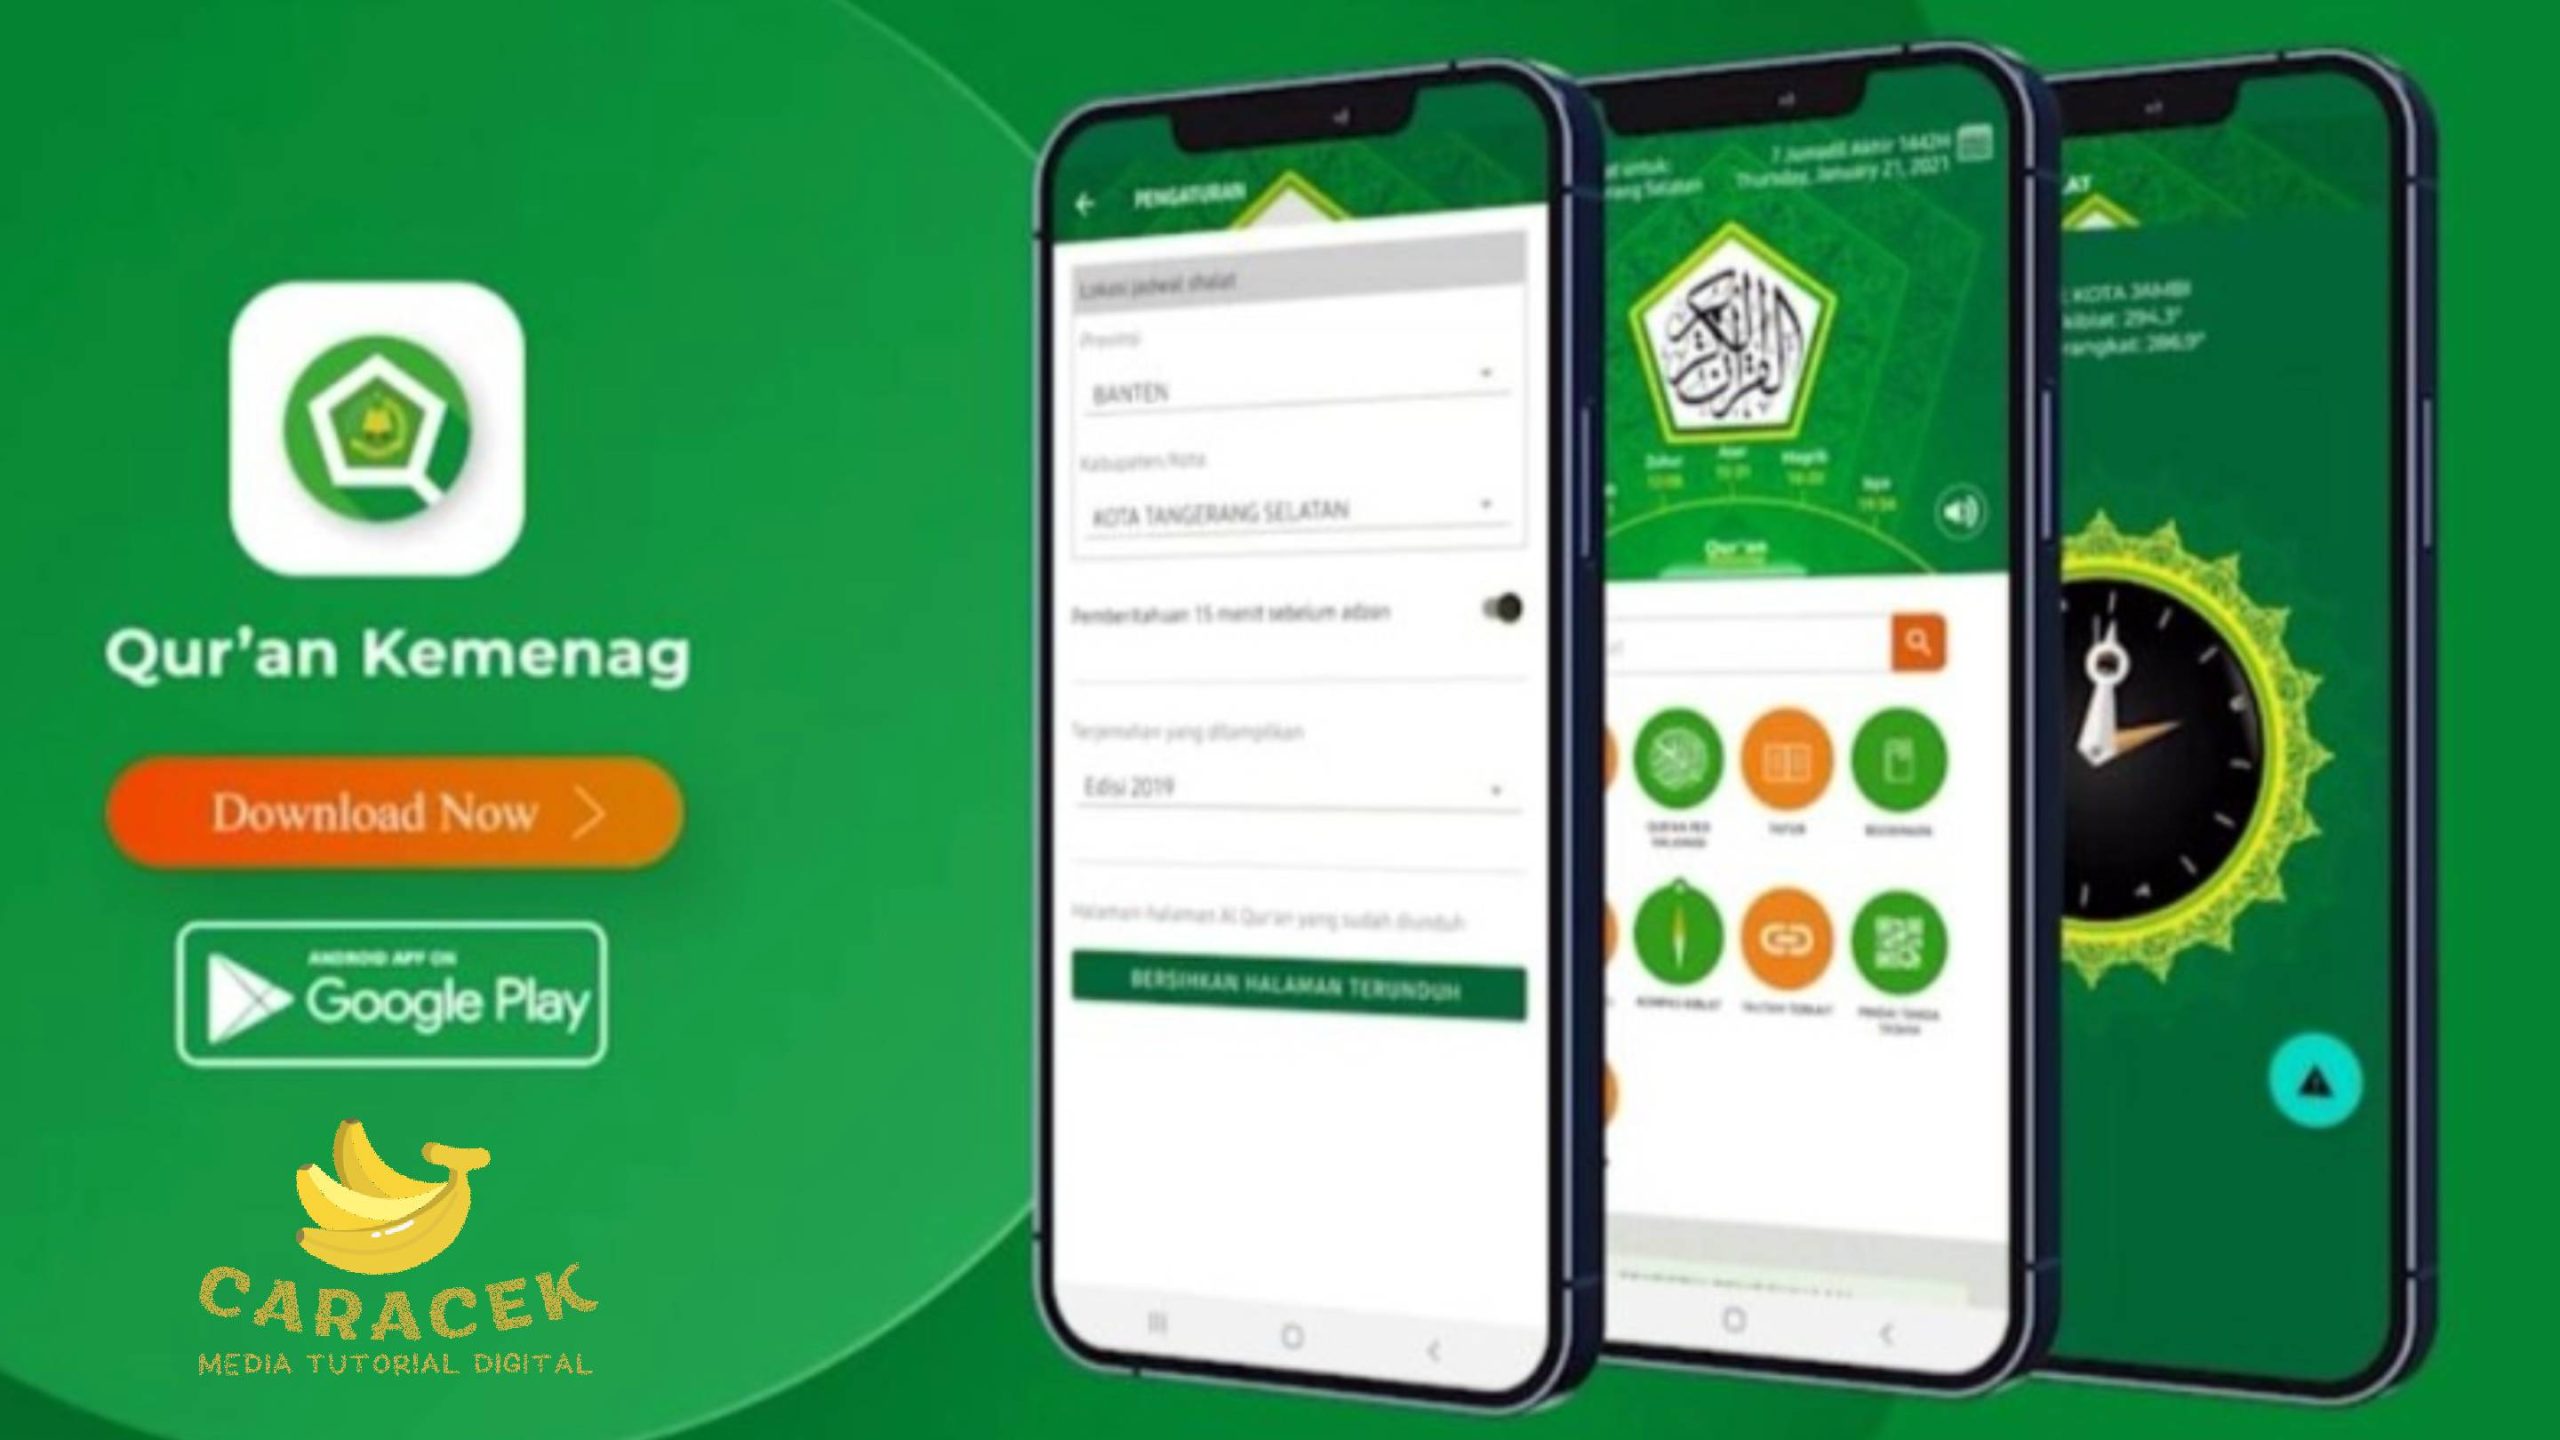 Aplikasi Al-Quran di Android